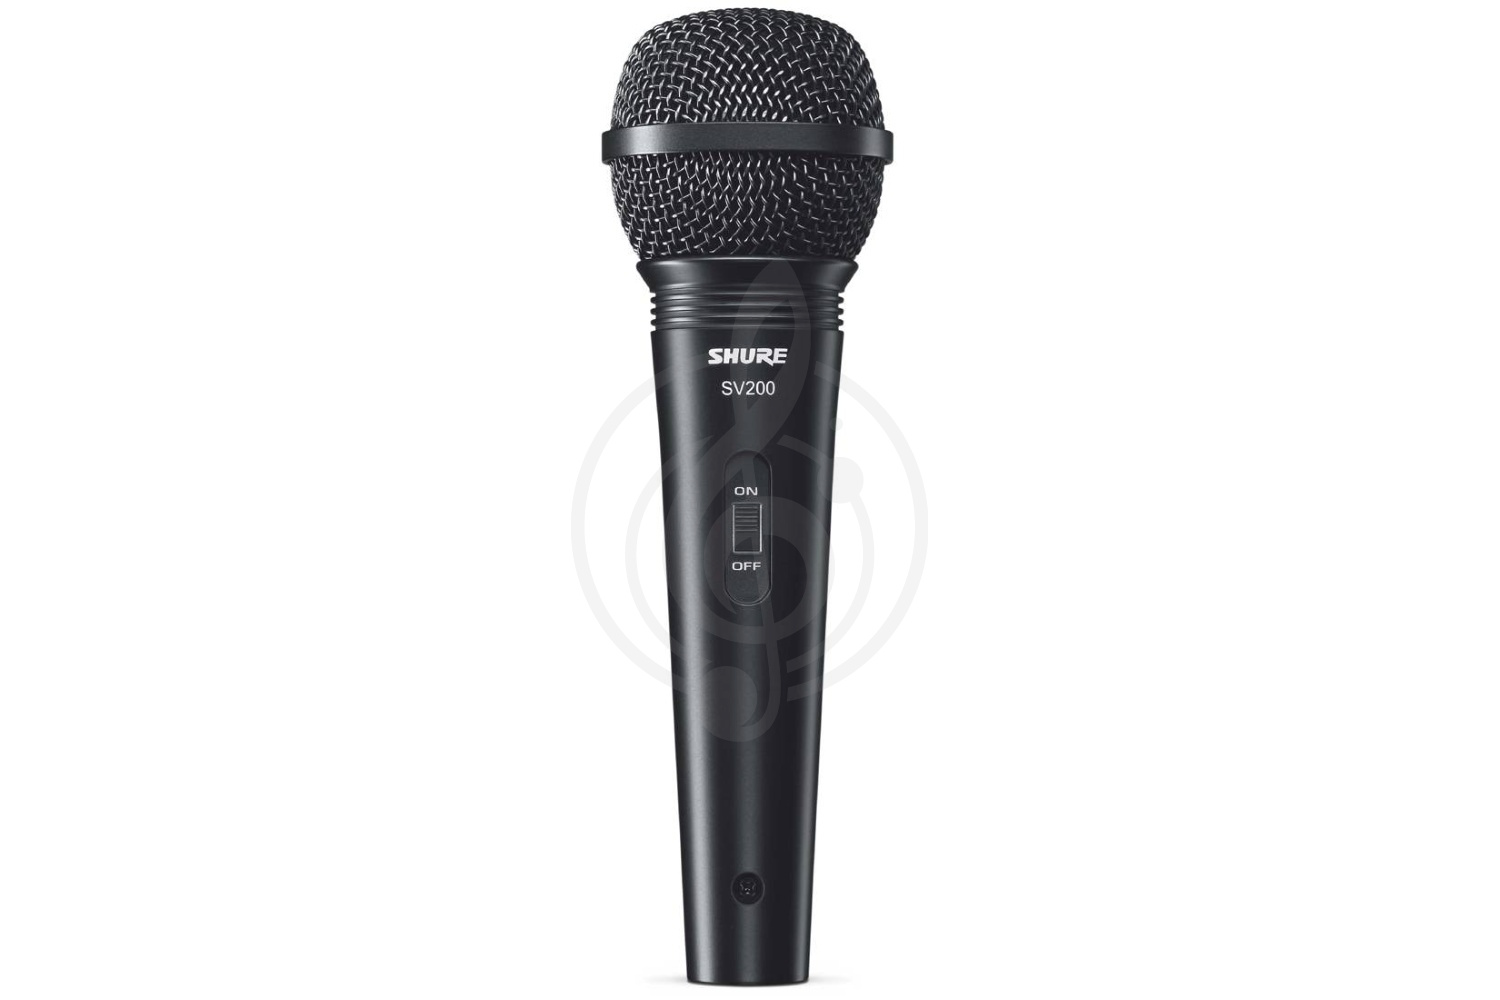 Динамический вокальный микрофон Динамические вокальные микрофоны Shure SHURE SV200-A - микрофон динамический вокальный SV200-A - фото 1